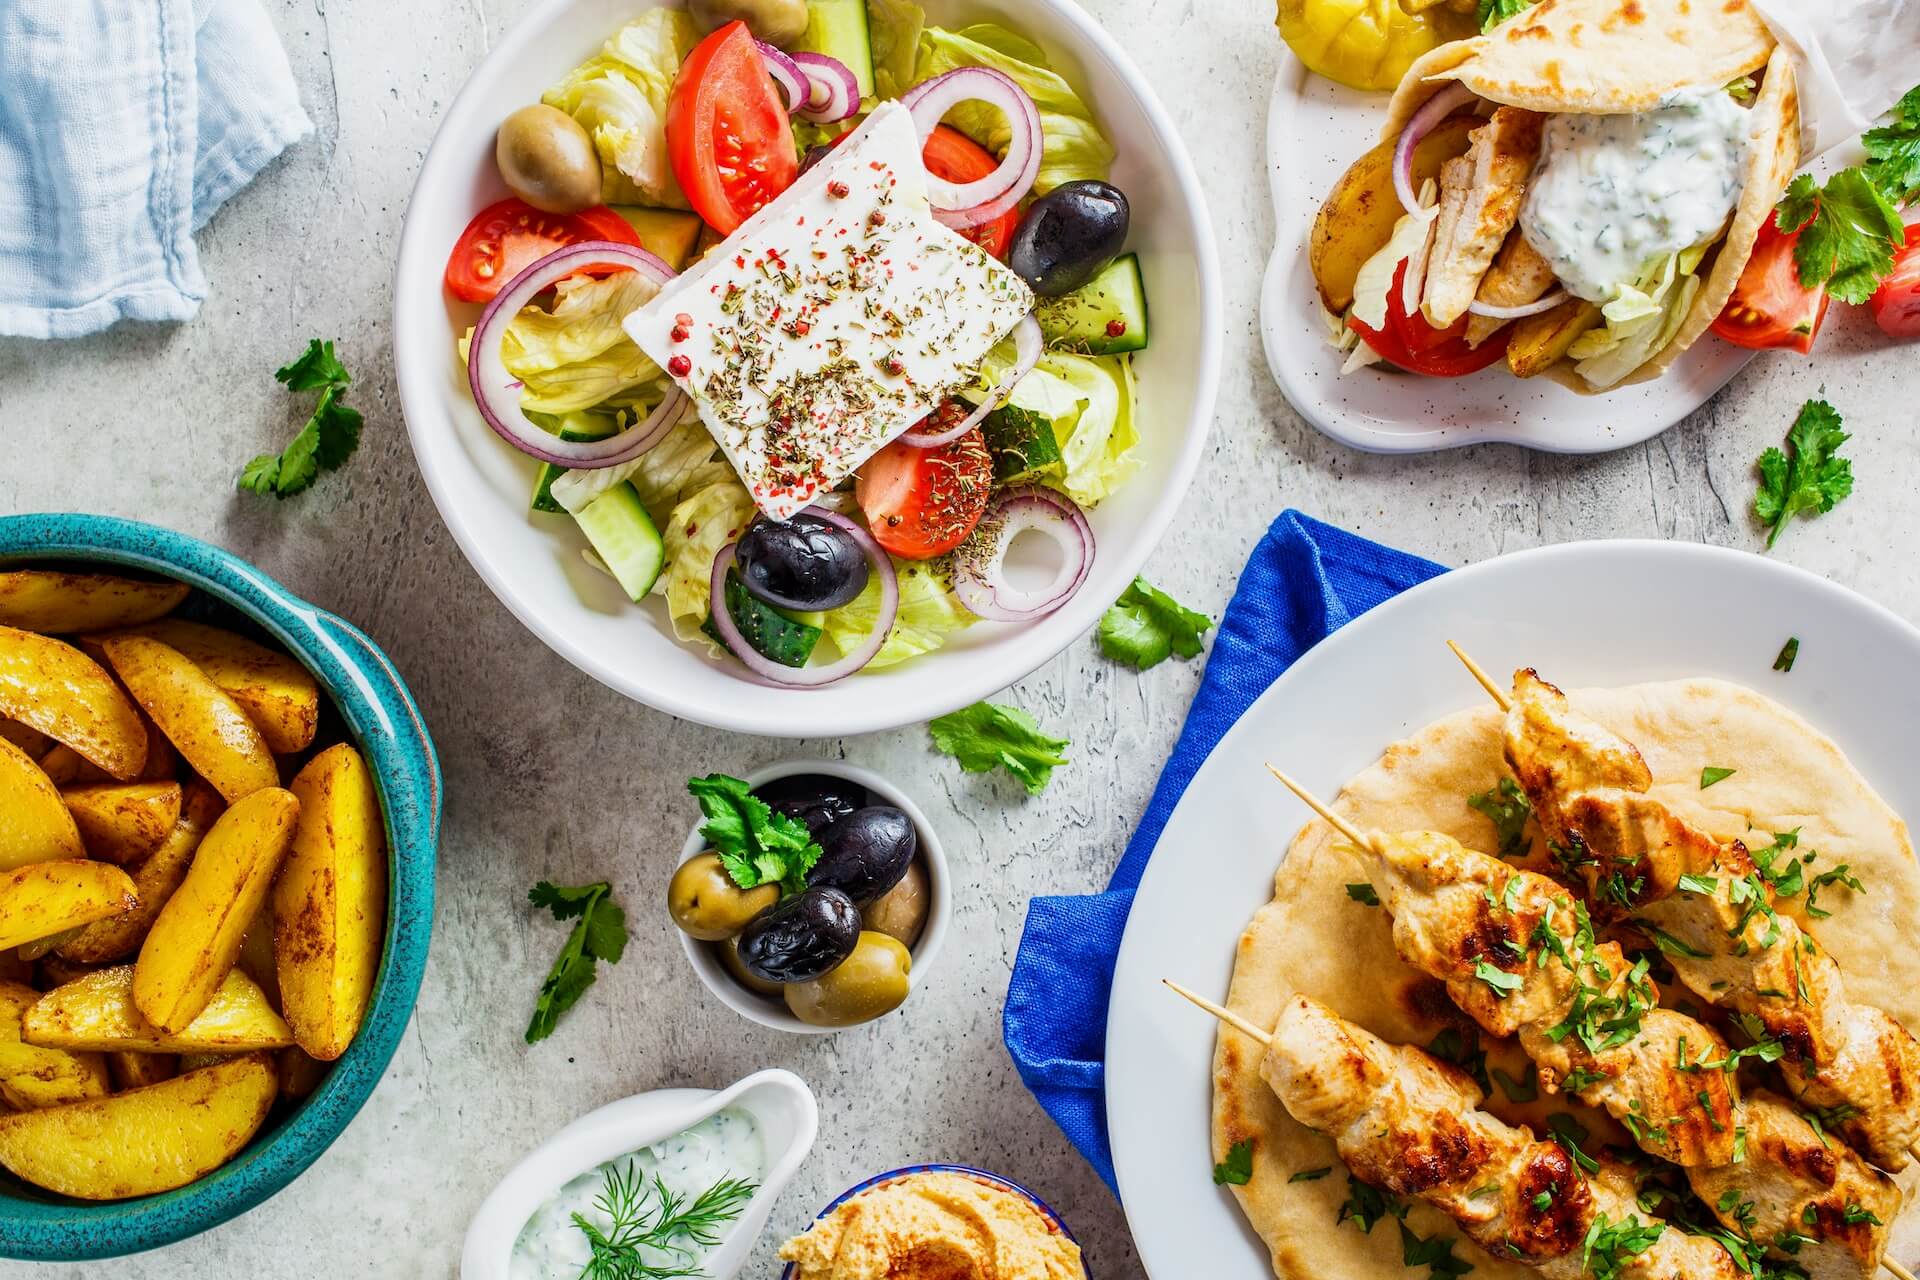 Greek salad, gyros, and souvlaki on the table